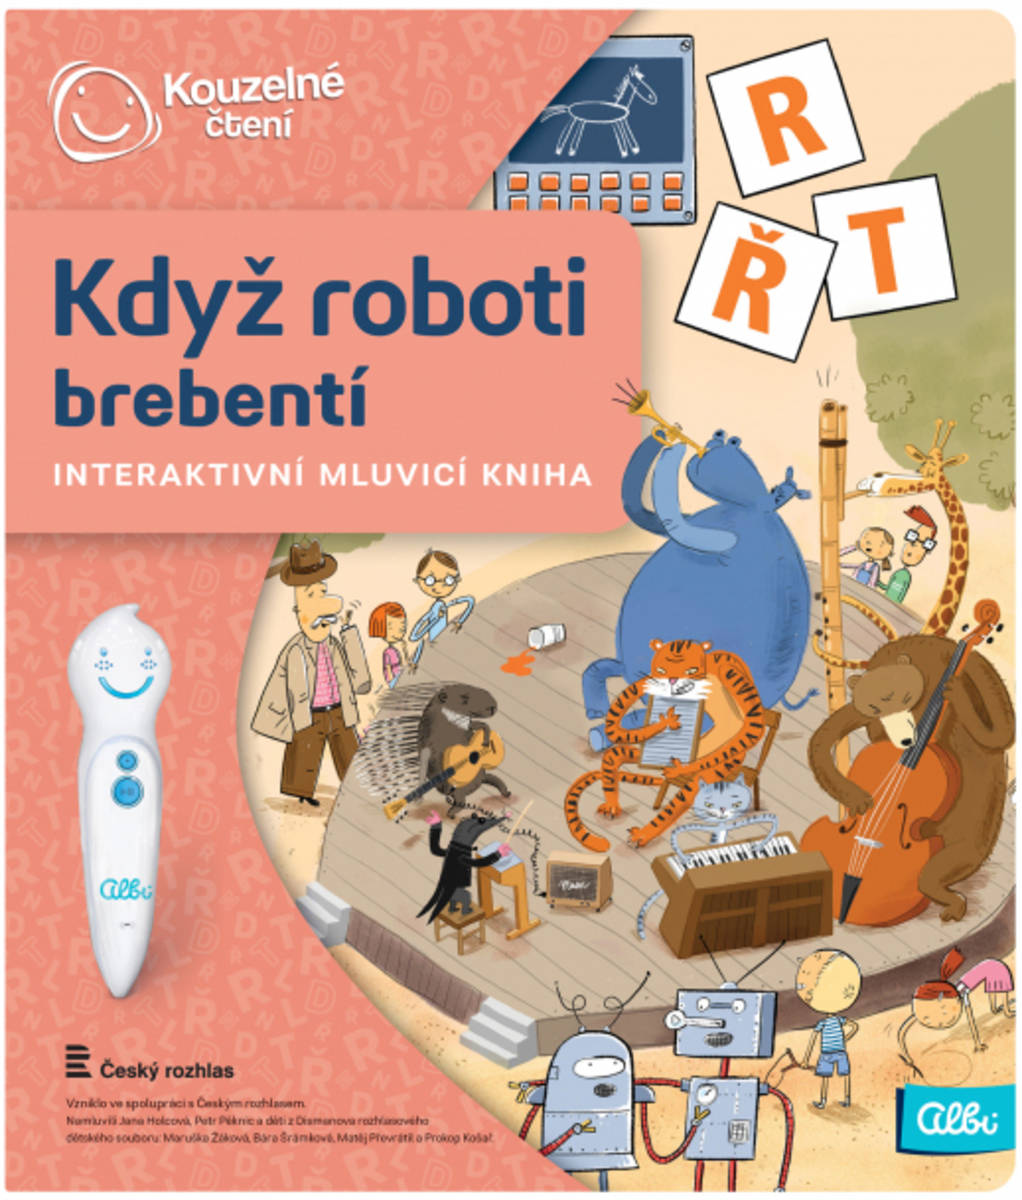 Fotografie ALBI Kouzelné čtení Kniha interaktivní Když roboti brebentí